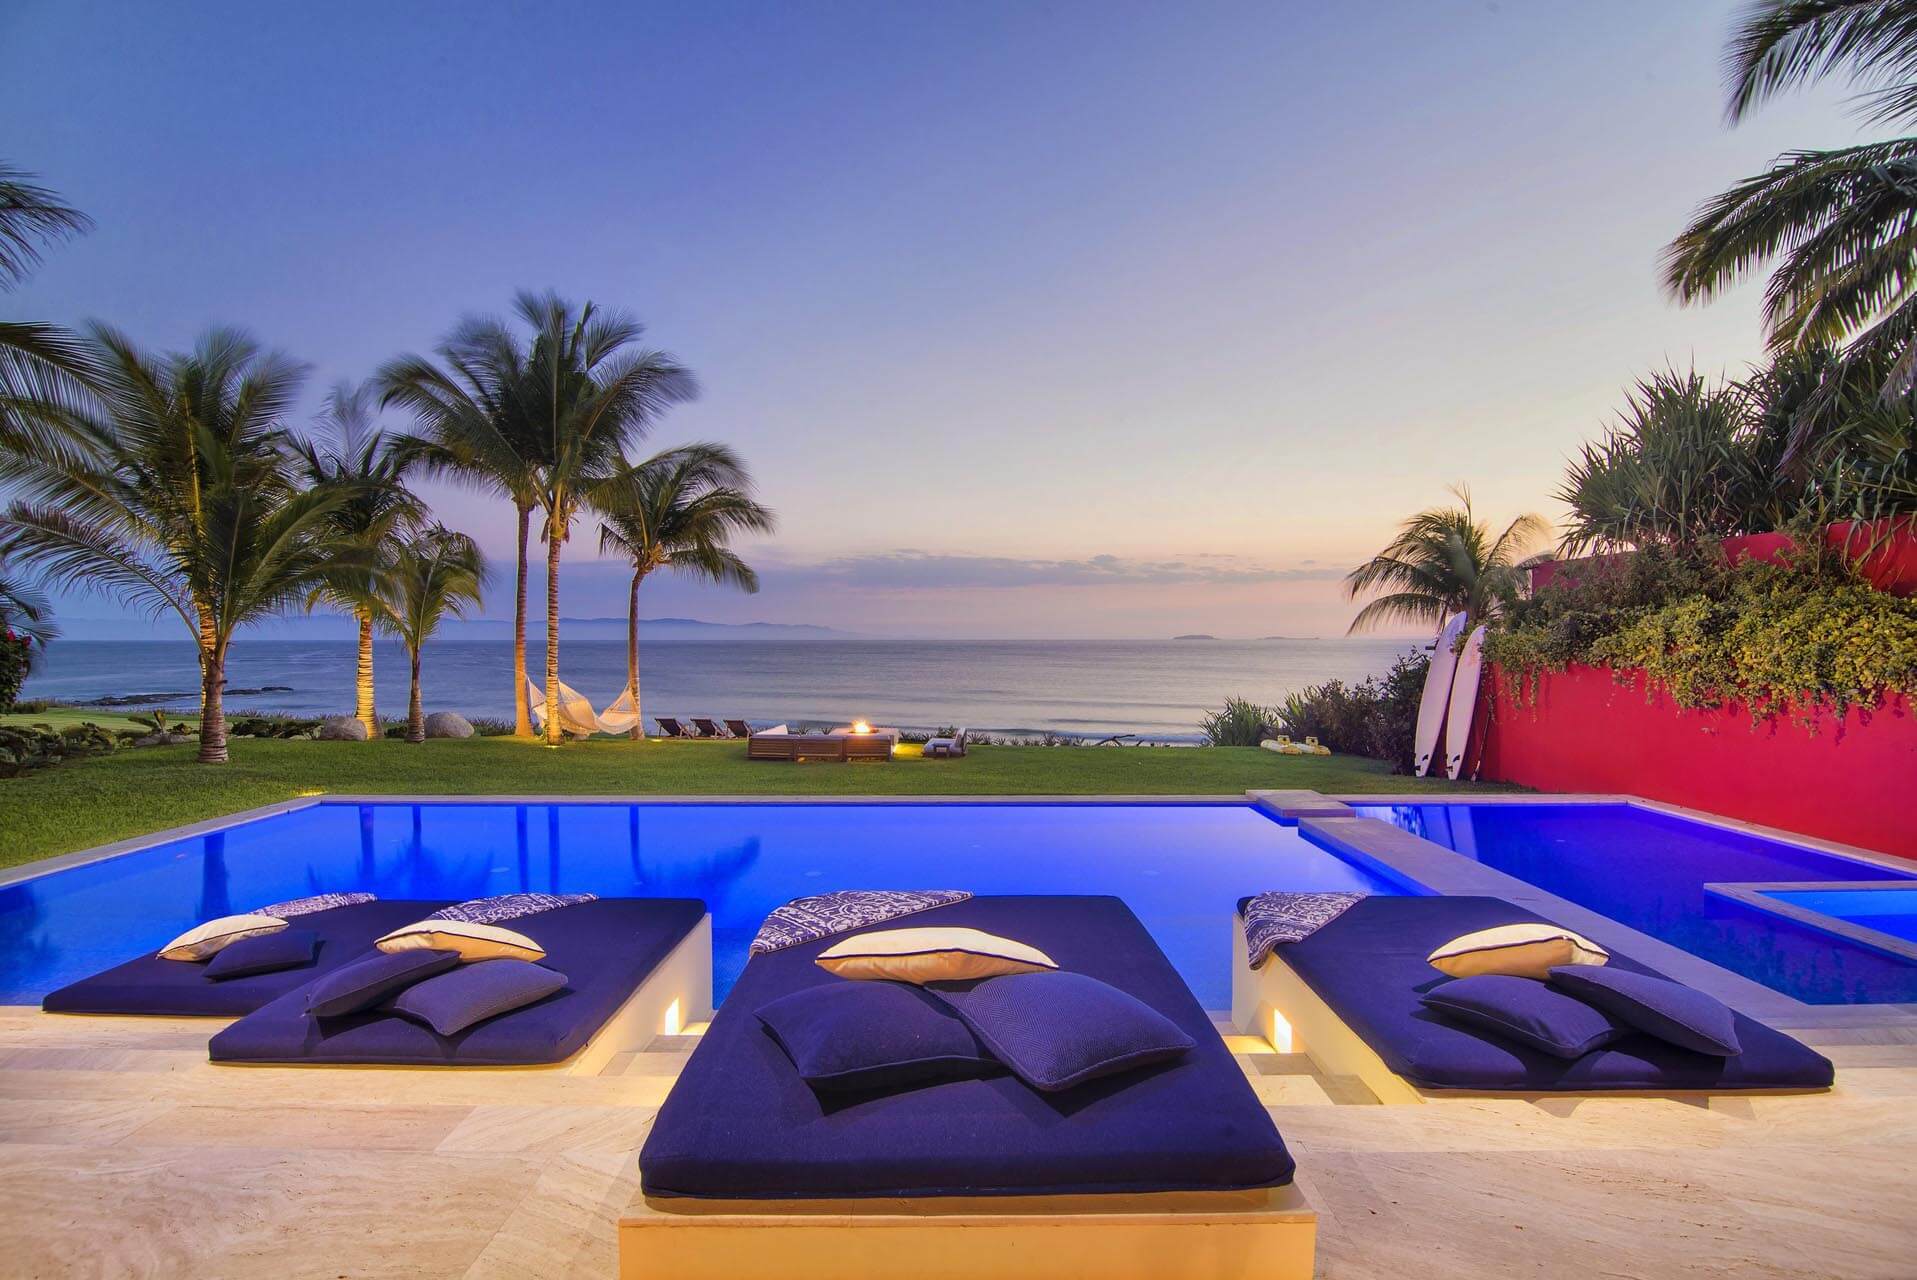 Los Cabos Vacation Rentals - Pool Front